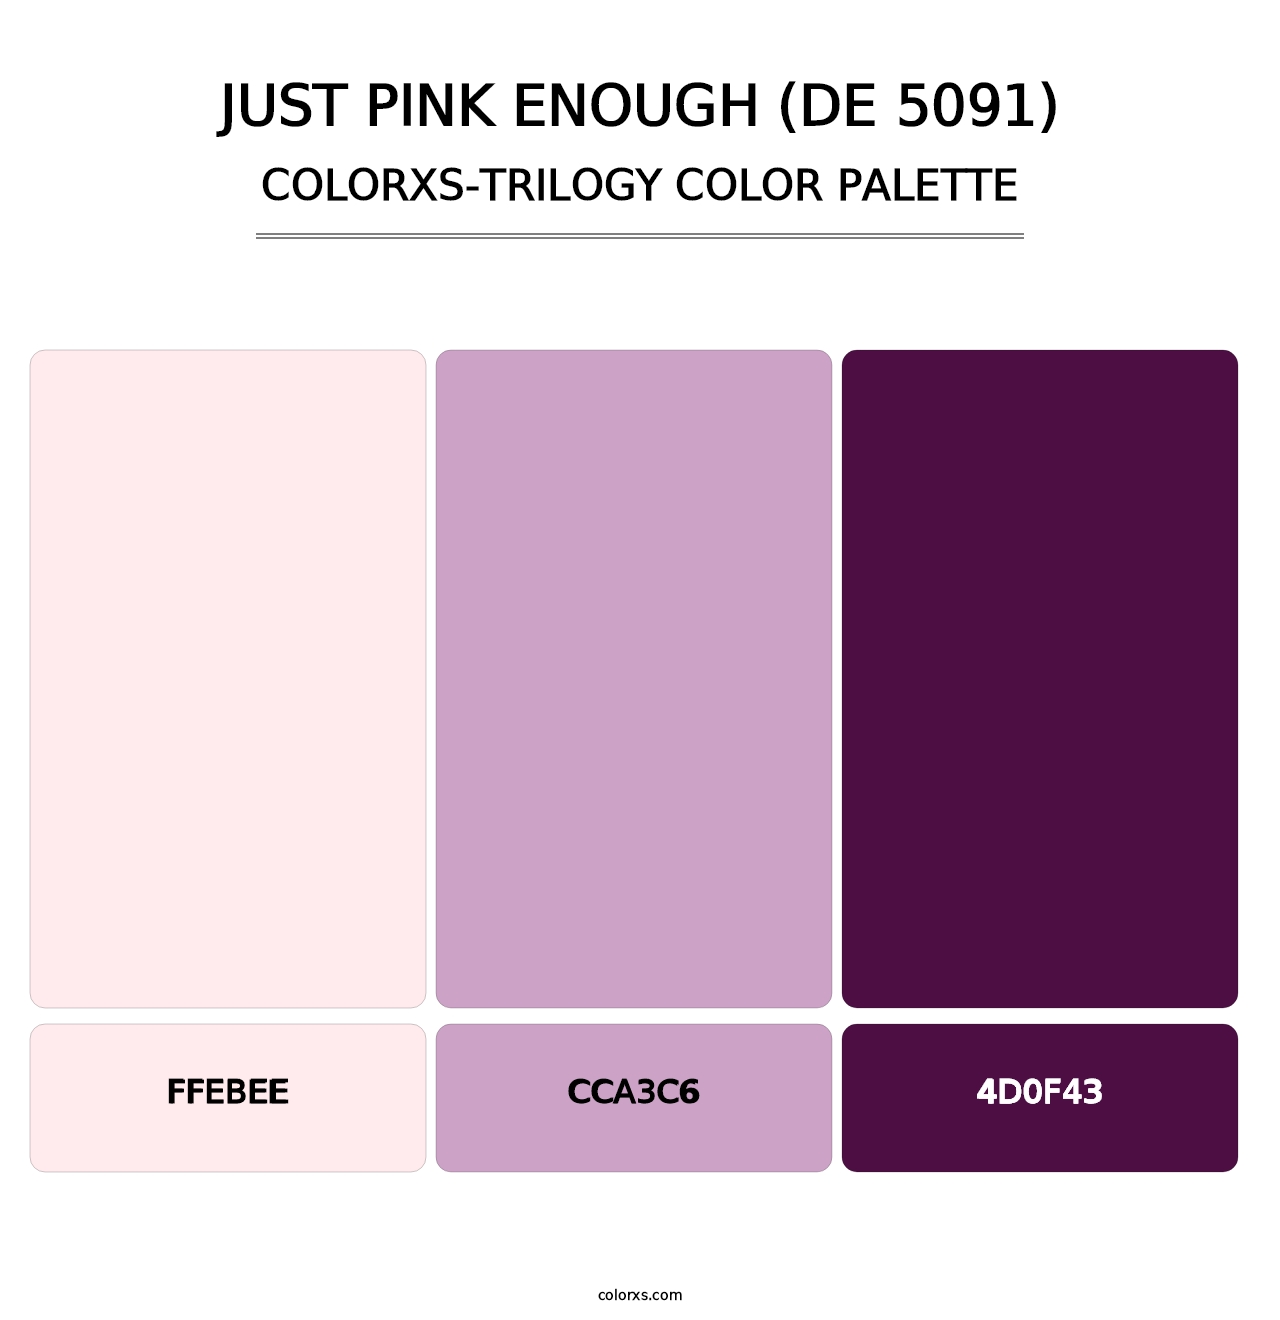 Just Pink Enough (DE 5091) - Colorxs Trilogy Palette